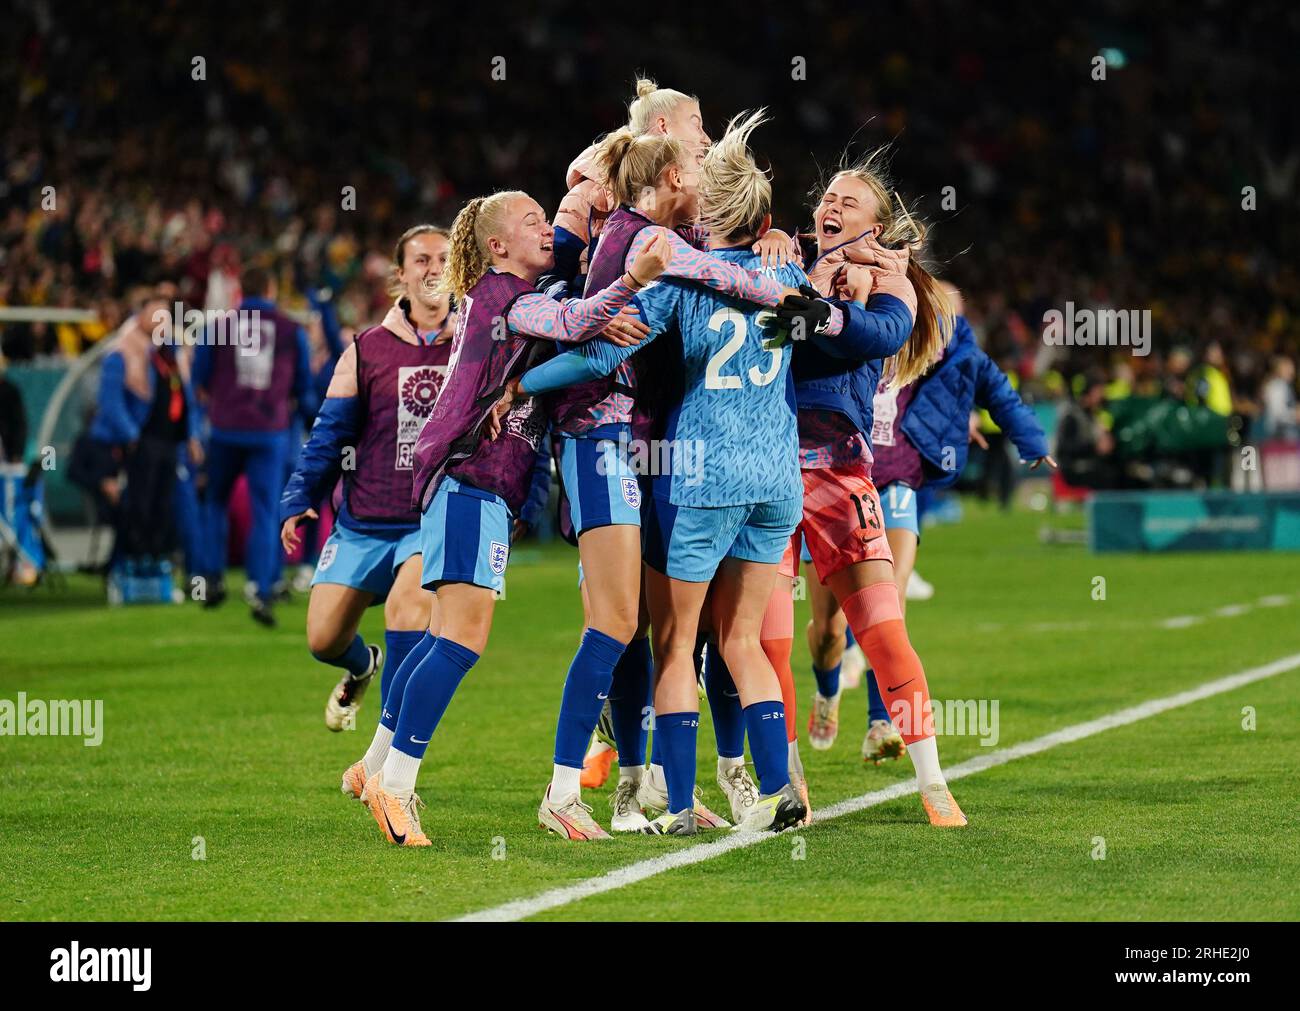 Englands Alessia Russo feiert das dritte Tor seiner Mannschaft während des Halbfinalspiels der FIFA Women's World Cup im Stadium Australia, Sydney. Bilddatum: Mittwoch, 16. August 2023. Stockfoto